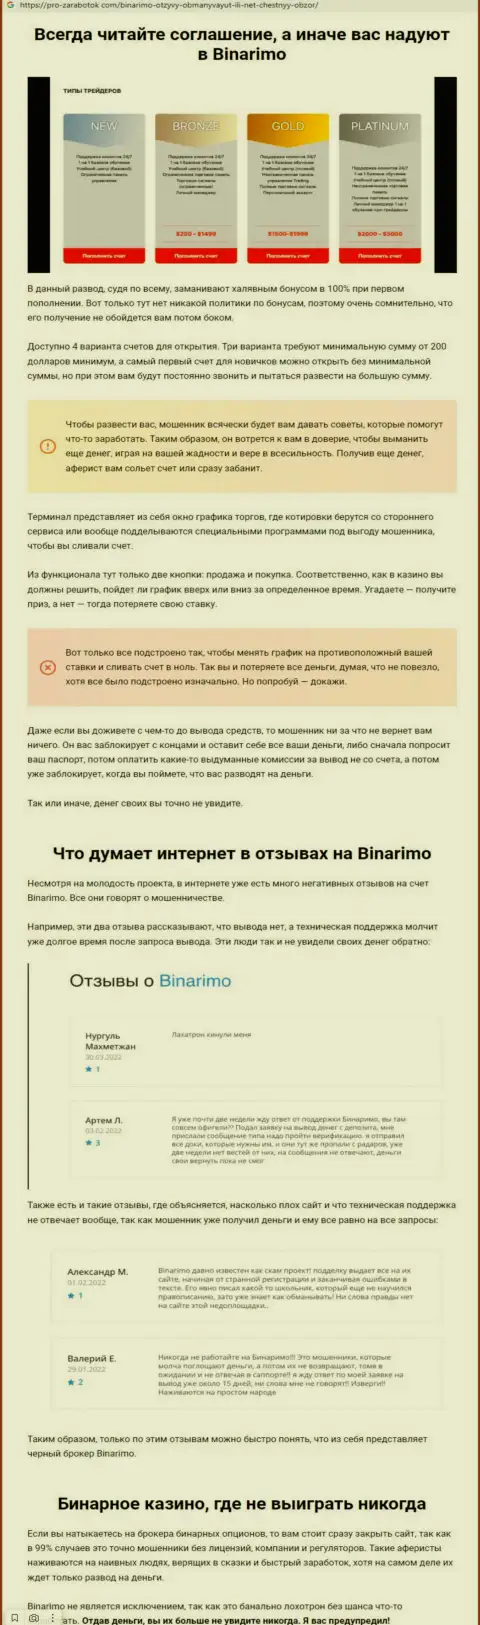 Binarimo - это интернет-разводилы, которым денежные средства перечислять не нужно ни под каким предлогом (обзор неправомерных деяний)